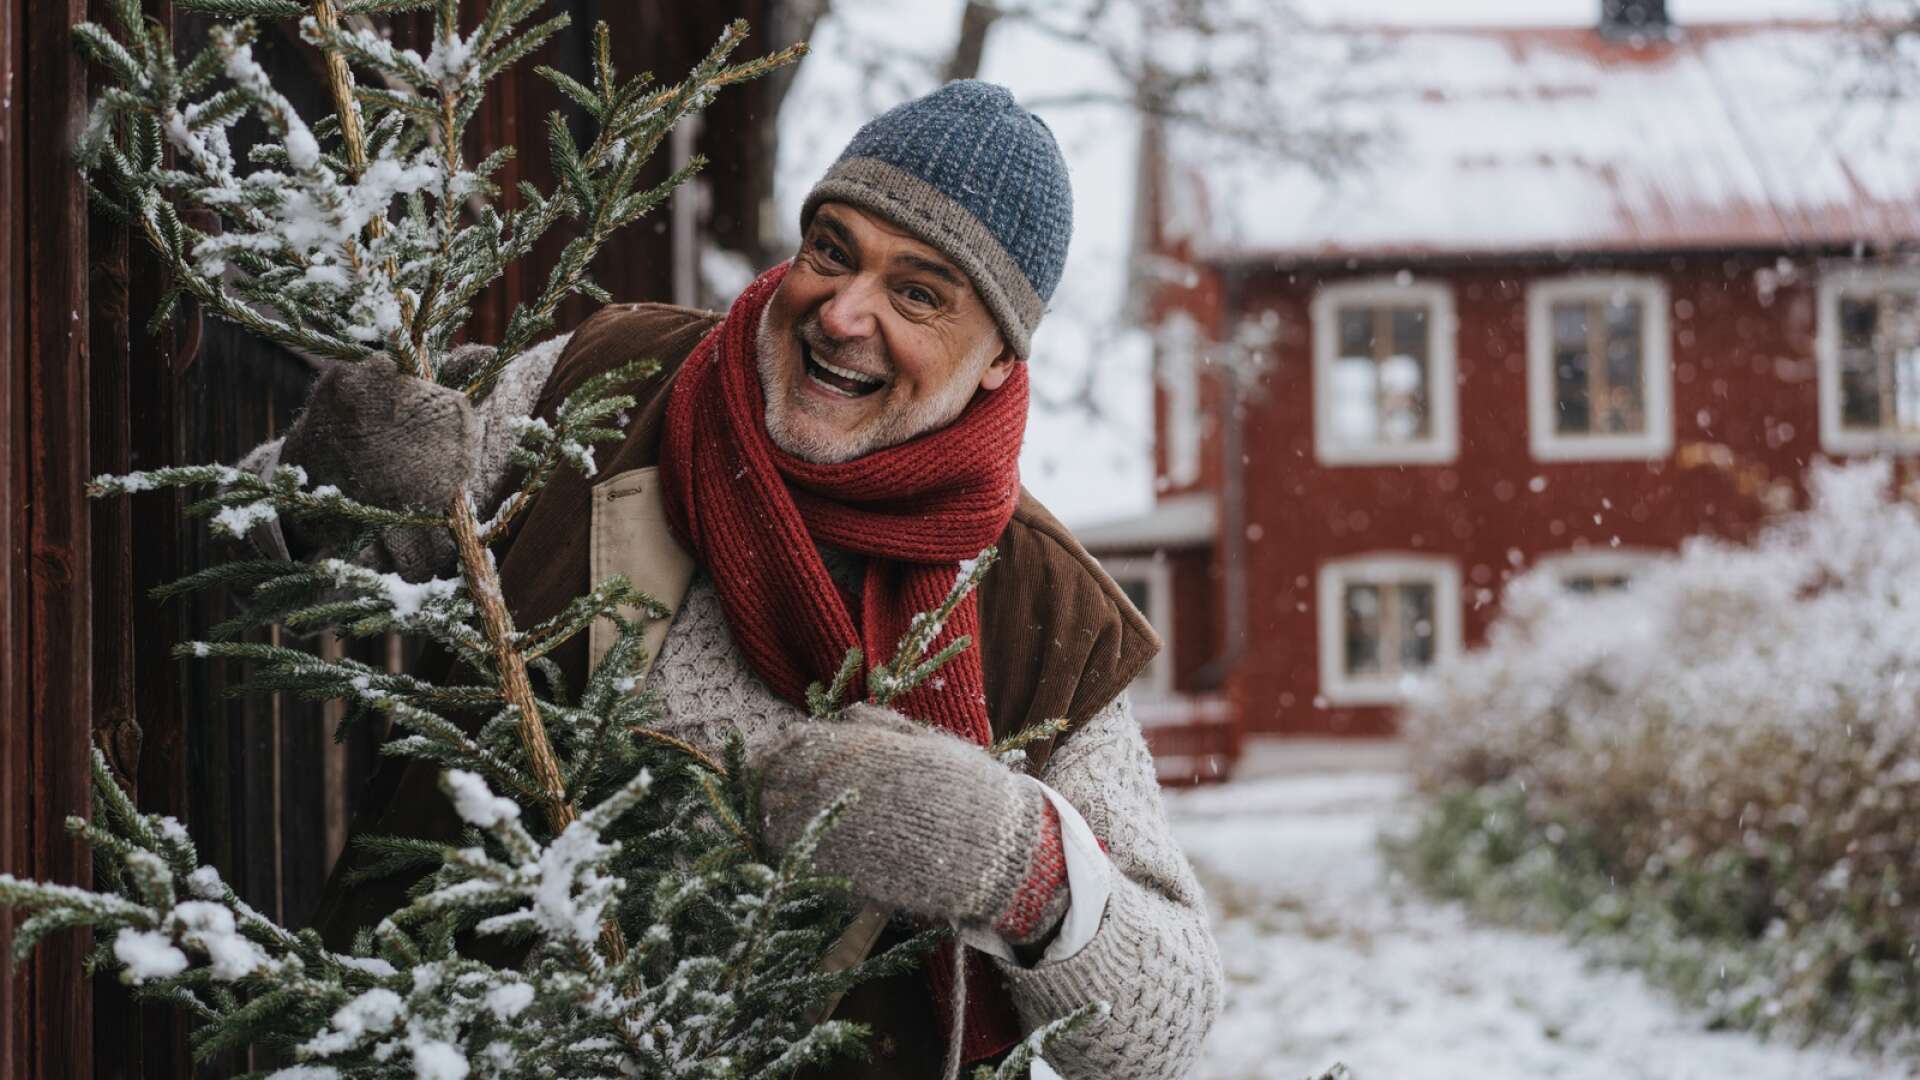 Barndomens jular hemma i Degerfors präglar fortfarande Ernst Kirchsteiger. NWT möter en omtyckt tv-profil som vill tro gott om människor och leva där det finns skratt.